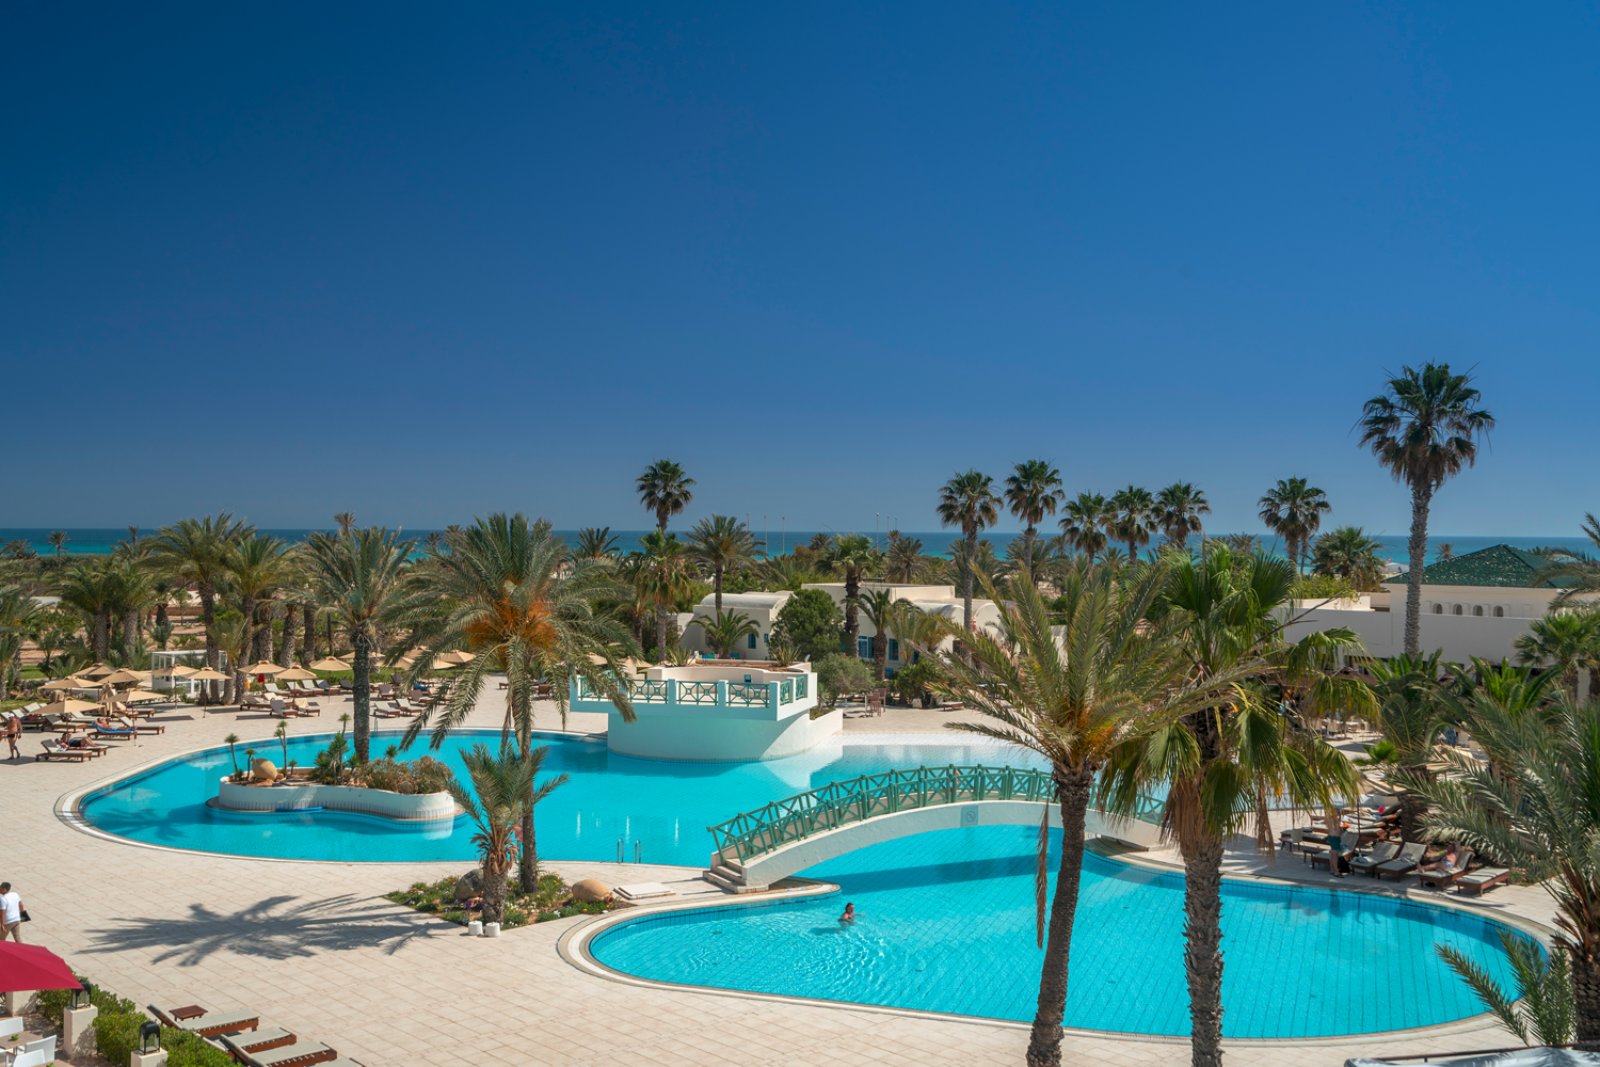 Club de vacances en formule tout inclus à Djerba - Tunisie!